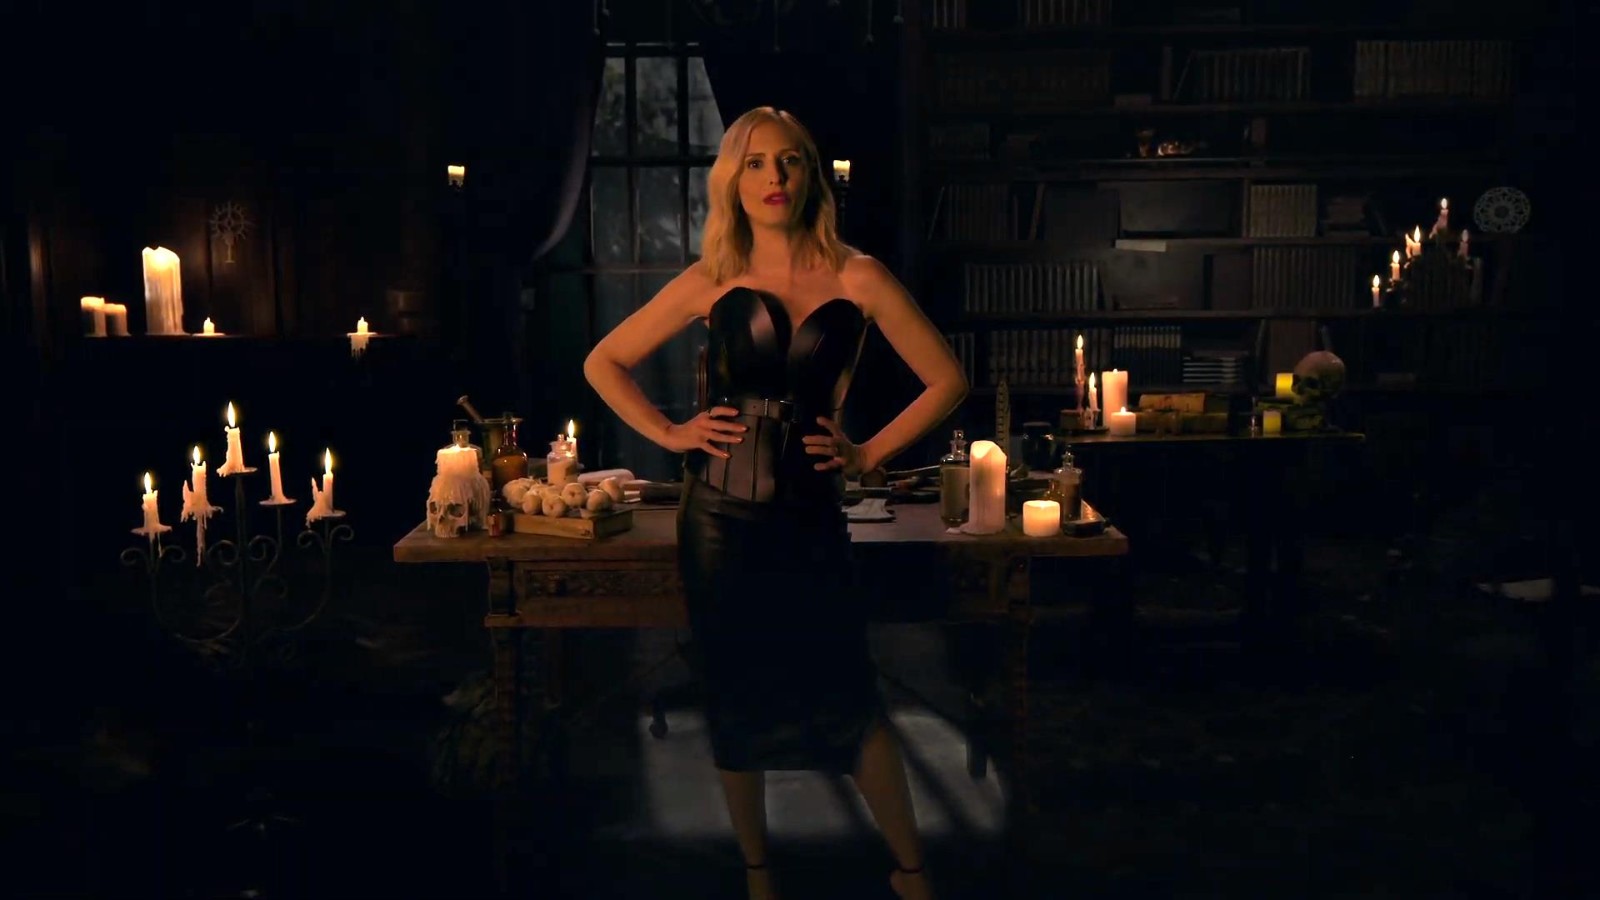 《暗黑4》吸血鬼猎人通缉活动预告 女星莎拉出镜